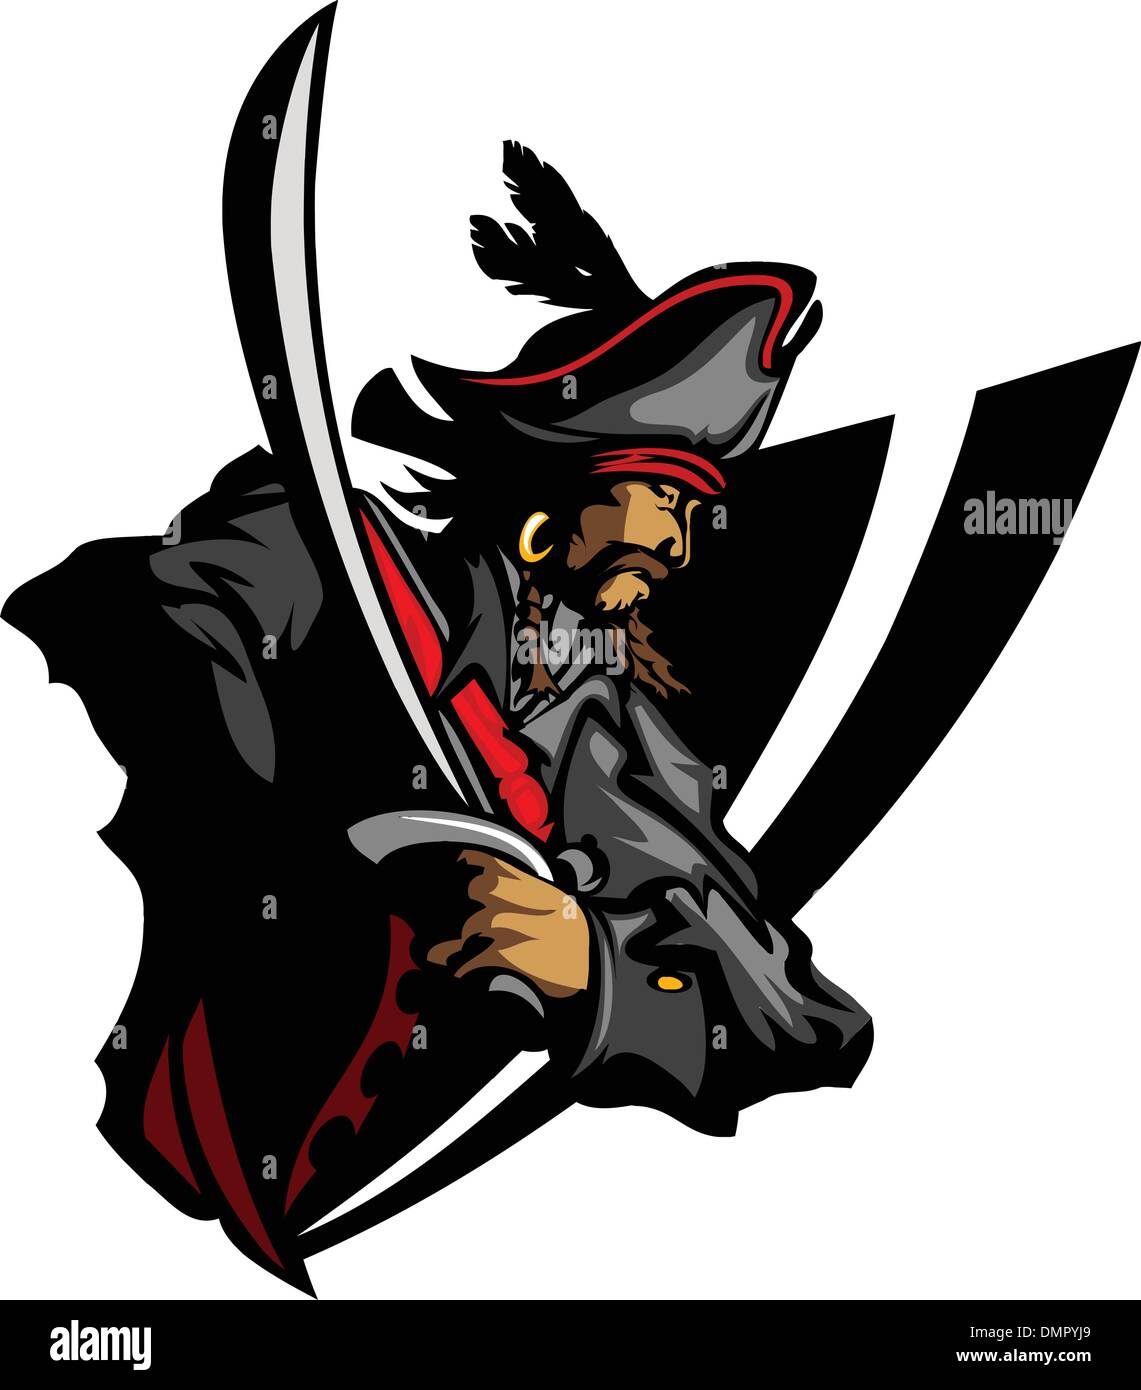 Piraten-Maskottchen mit Schwert und Hut graphischen Vektor-Illustration Stock Vektor